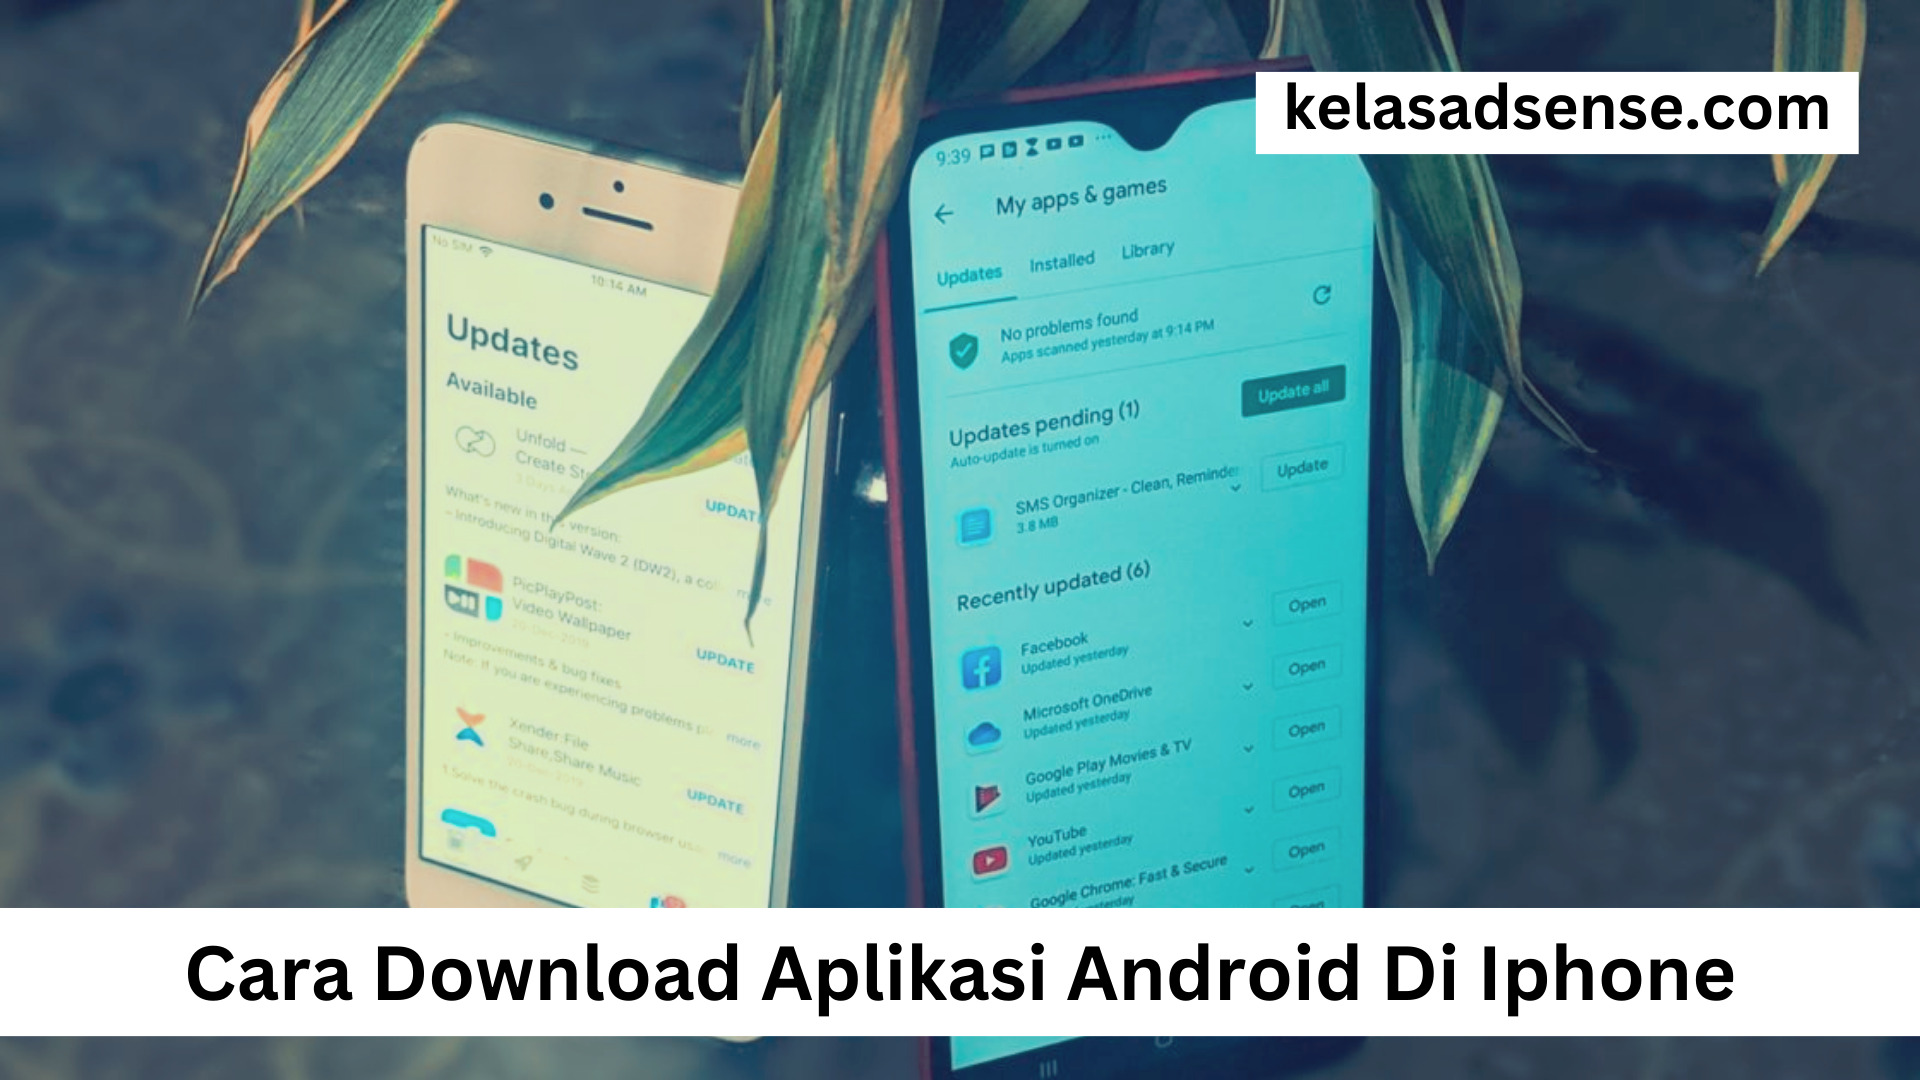 Cara Download Aplikasi Android Di Iphone